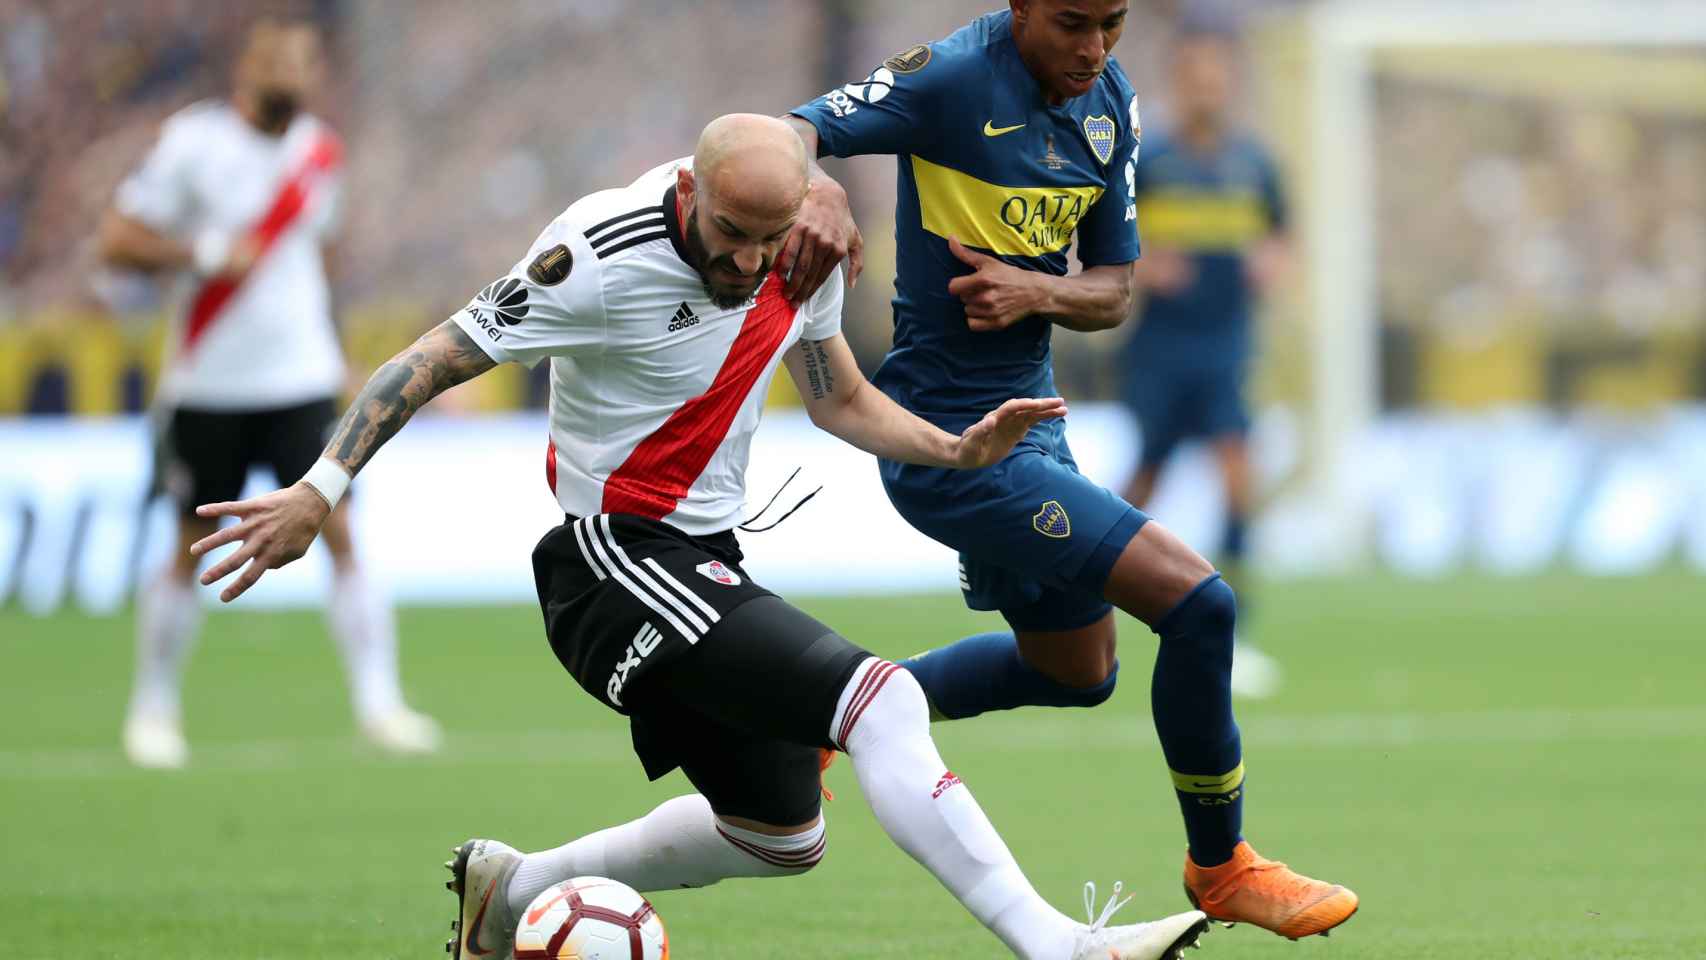 El jugador de River Plate Jonathan Maidana disputa el balón con Sebastián VIlla de Boca Juniors